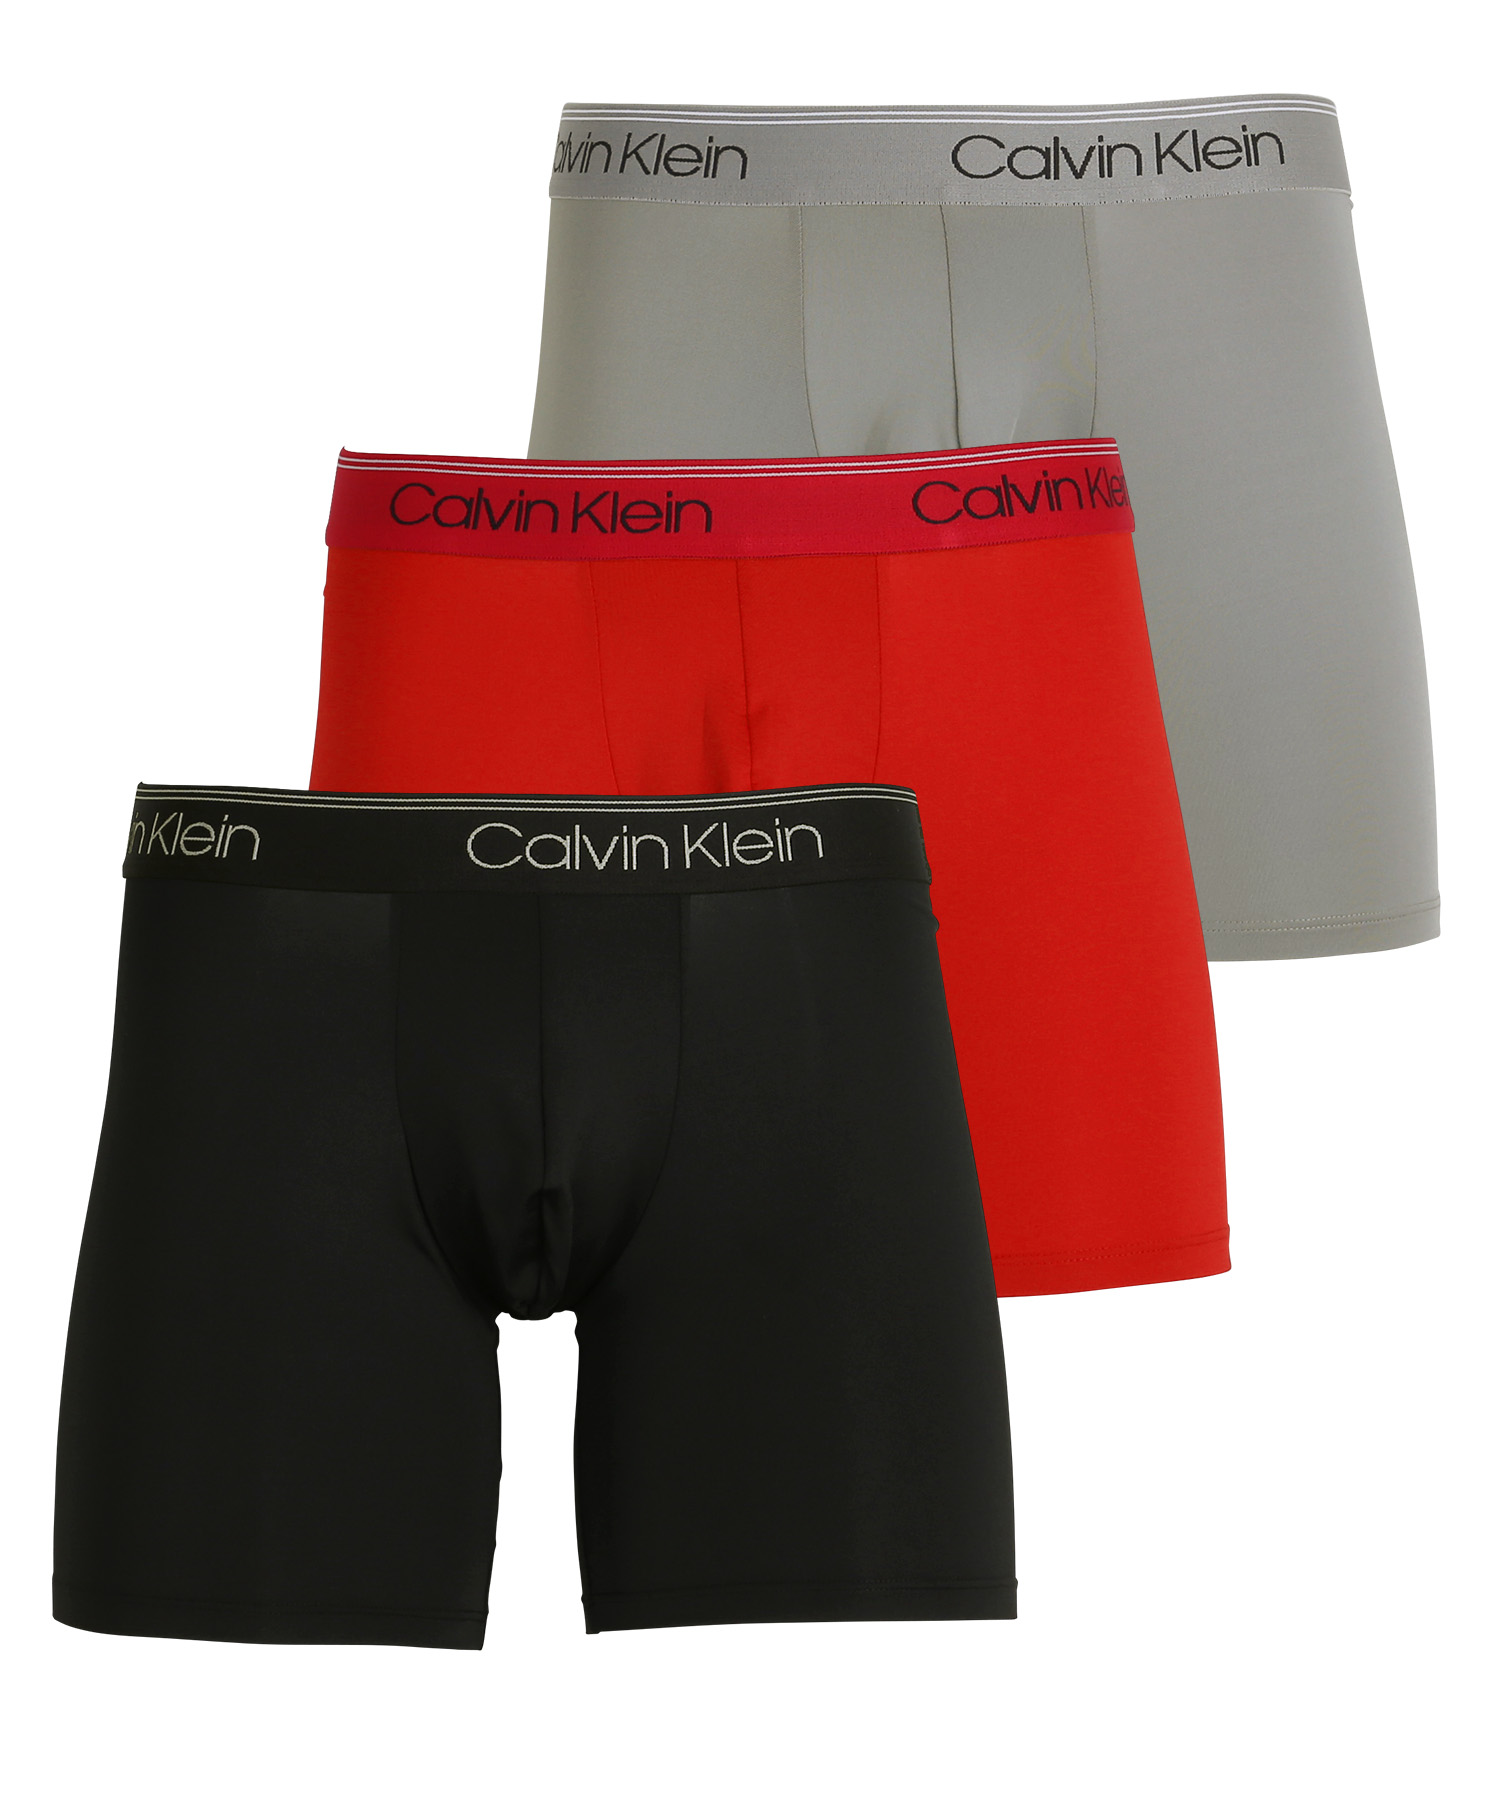 カルバンクライン Calvin Klein ロングボクサーパンツ 3枚セット メンズ アンダーウェア 男性下着 ツルツル 速乾 CK ロゴ 高級  ハイブランド